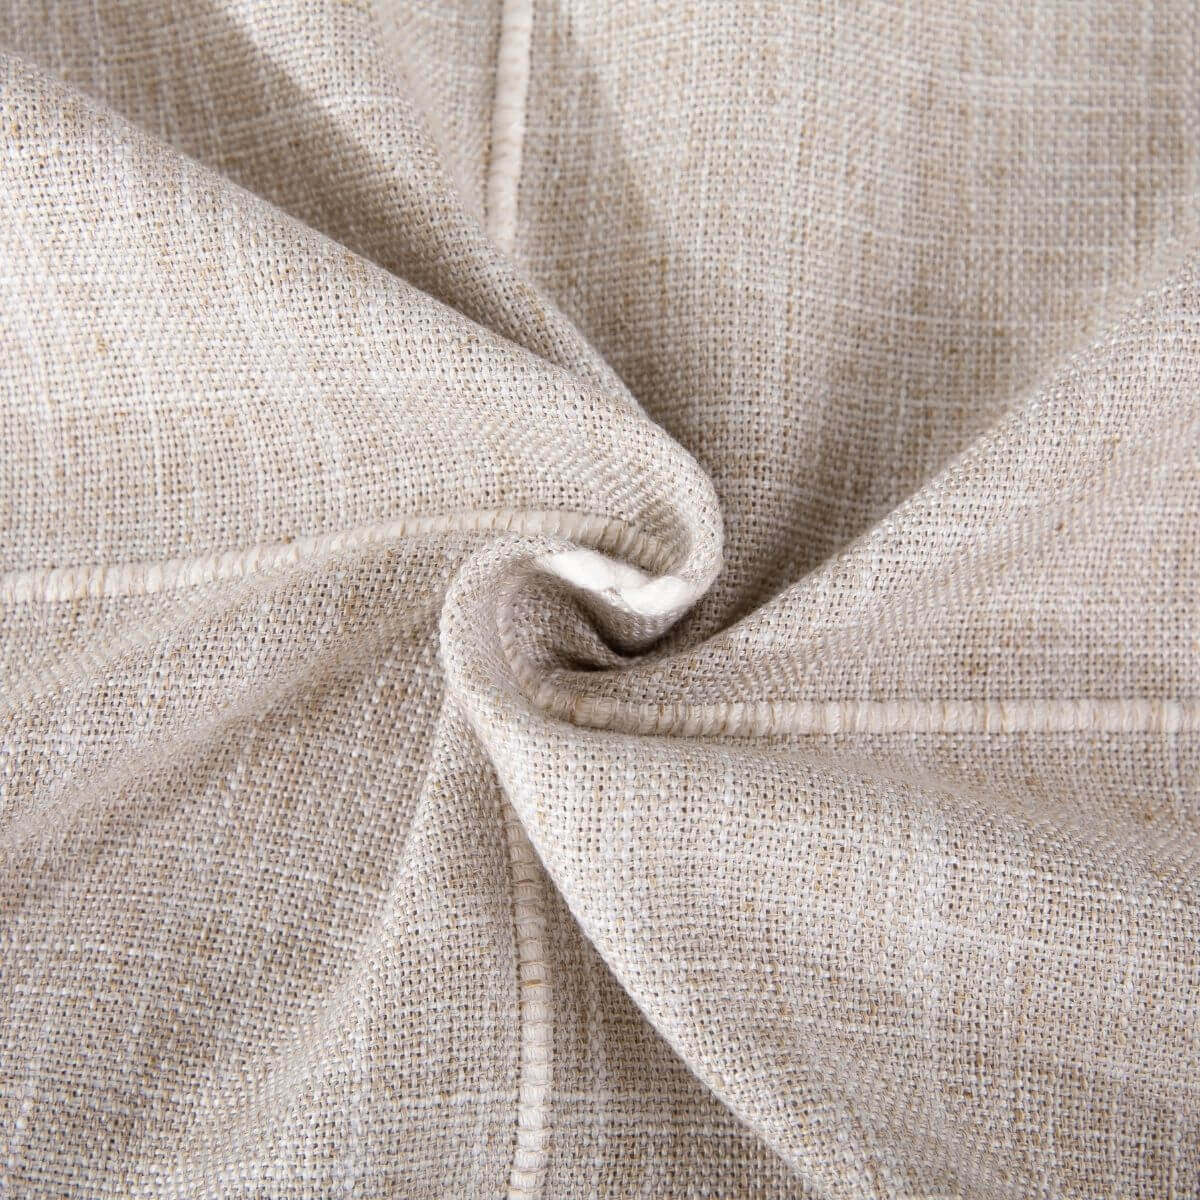 SASTYBALE beige linen tablecloths rectangular